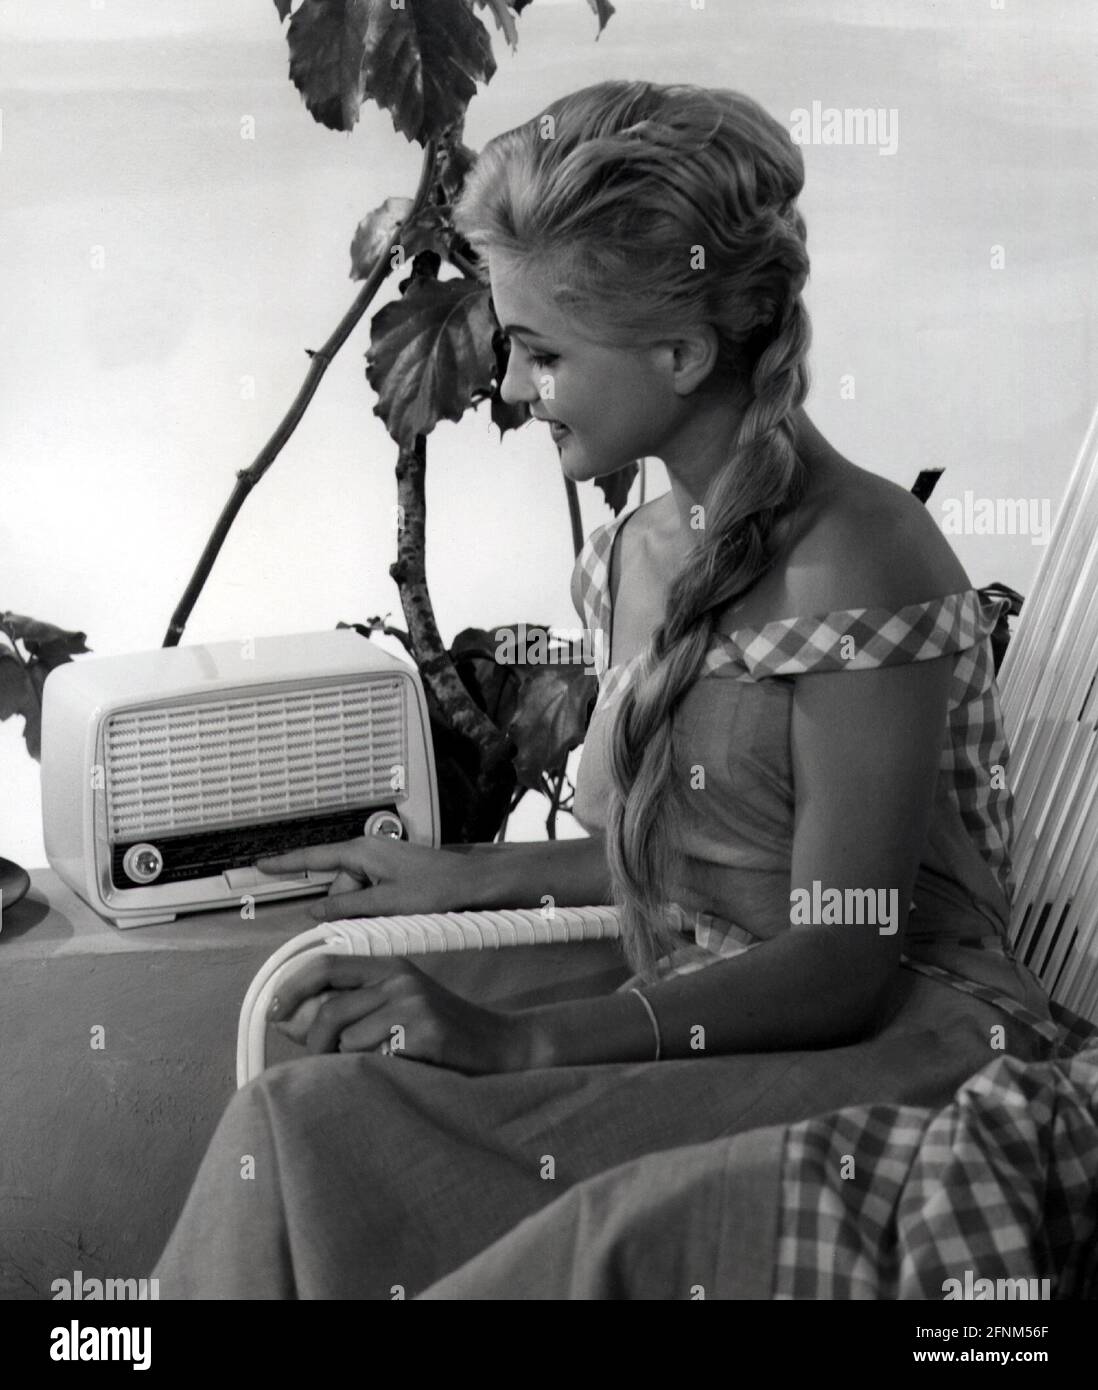 Rundfunk, Radio, Hörfunkgerät 'Kobold' 2700 W, 1957, ZUSÄTZLICHE-RIGHTS-CLEARANCE-INFO-NOT-AVAILABLE Stockfoto